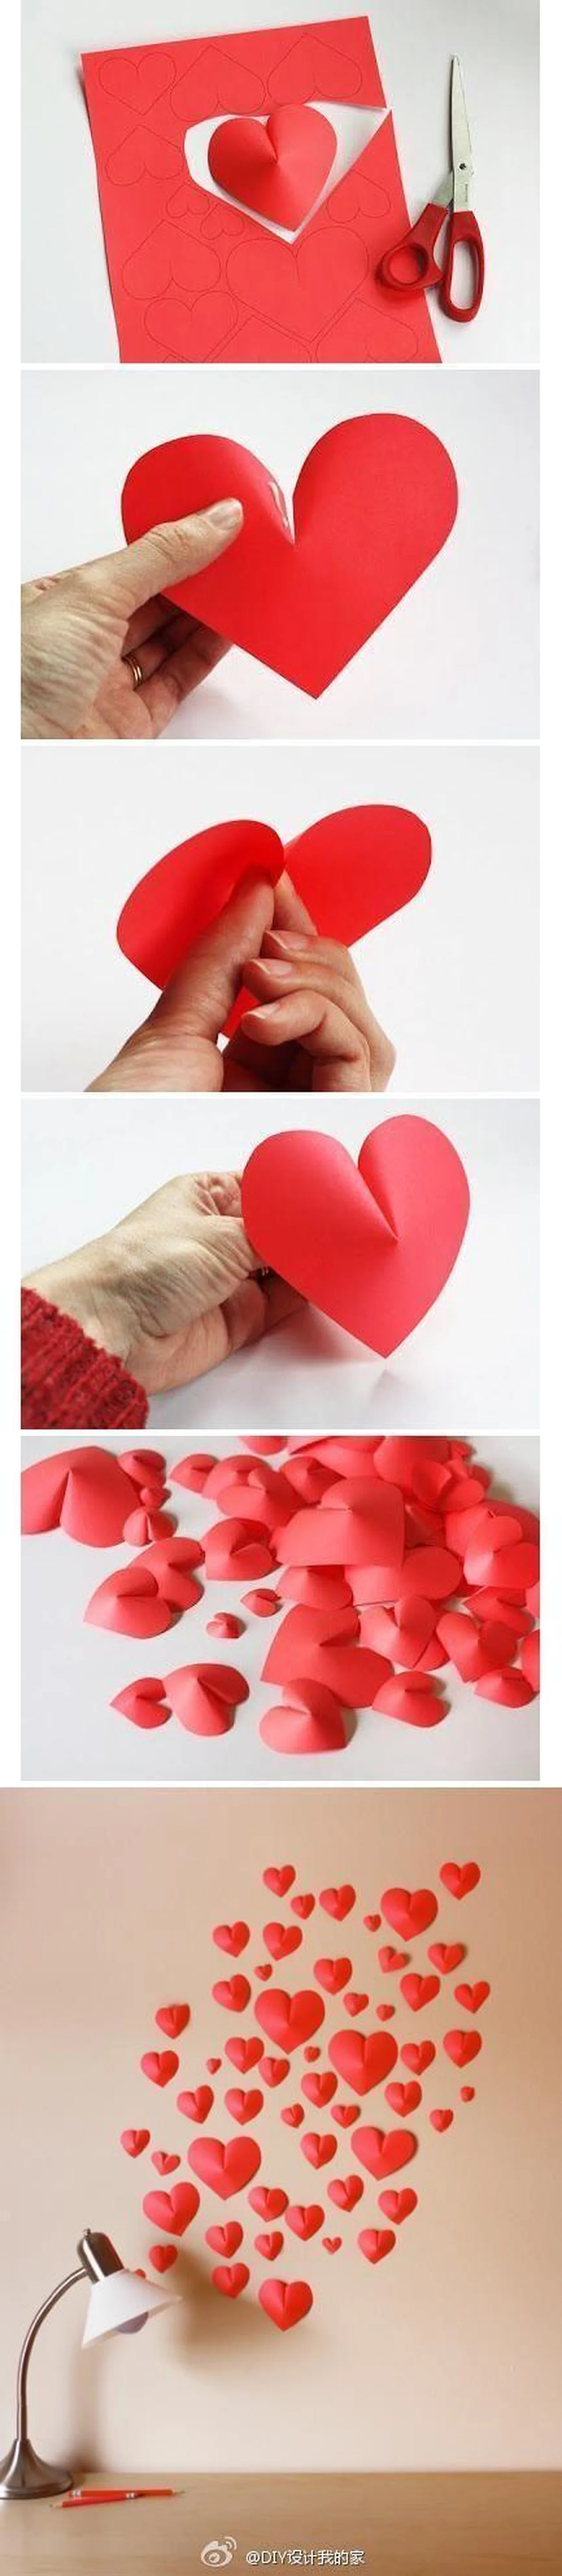 Kreatywna ozdoba 3D serce - instrukcja